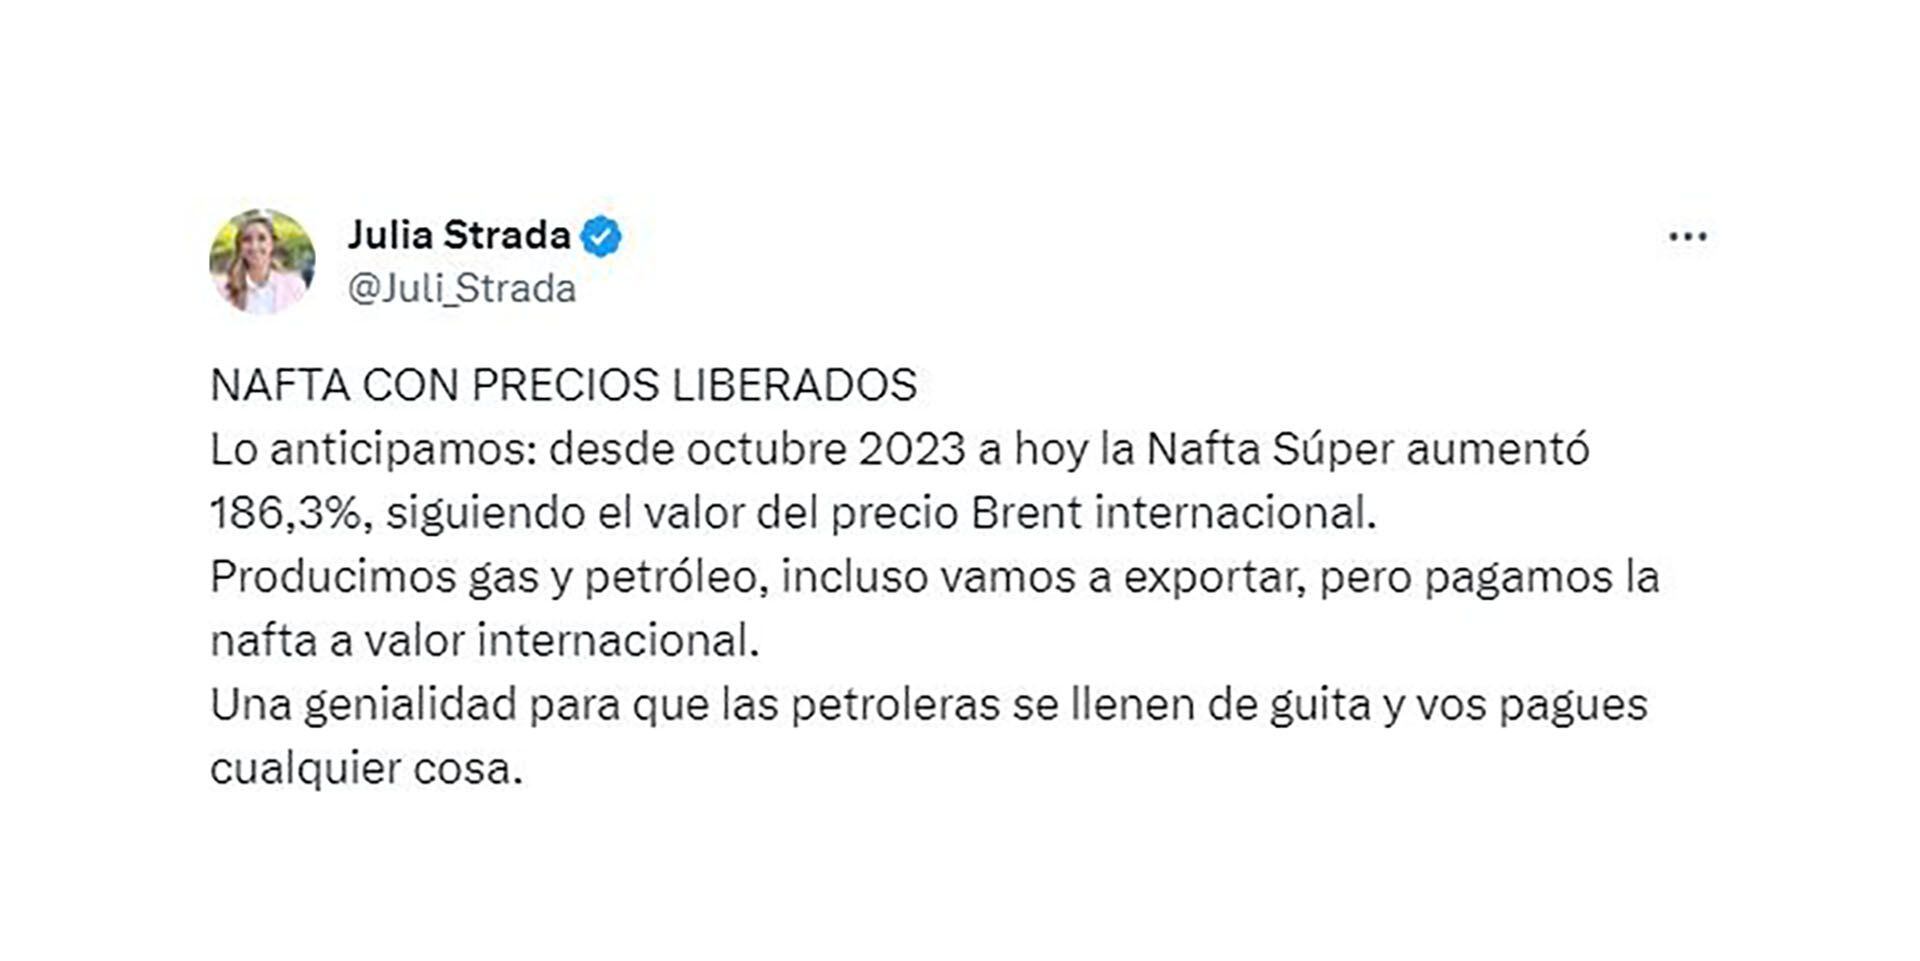 Tuits dirigentes peronistas aumento naftas